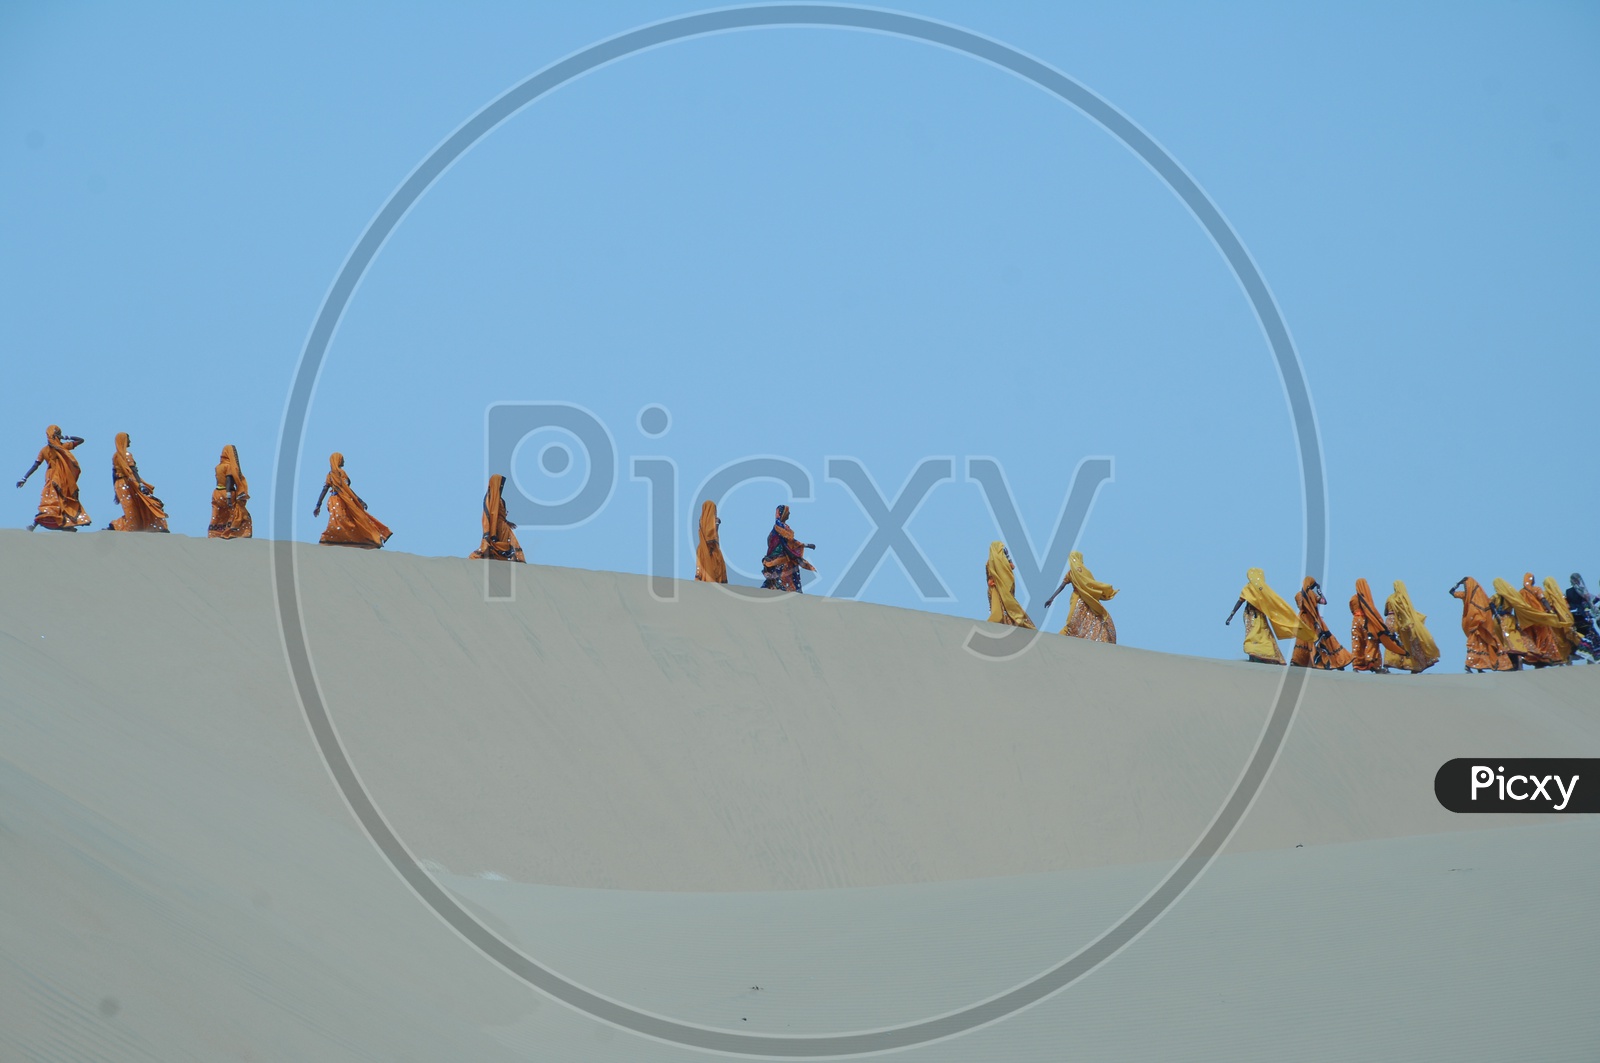 Rajasthani women walking  in a desert